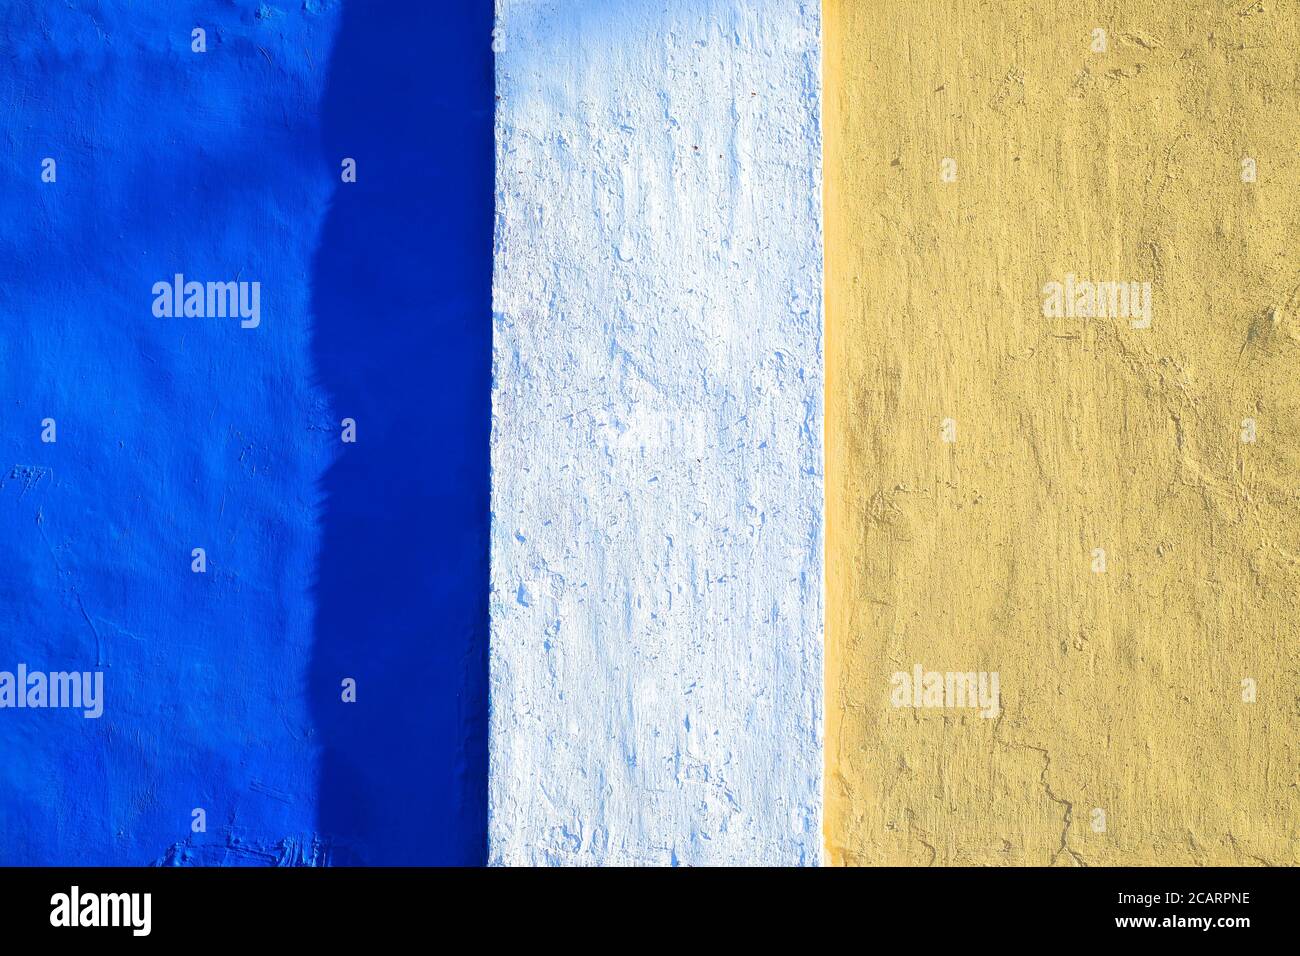 Bandes de couleurs vives : bleu et orange clair, surface peinte, lumière dure. Banque D'Images